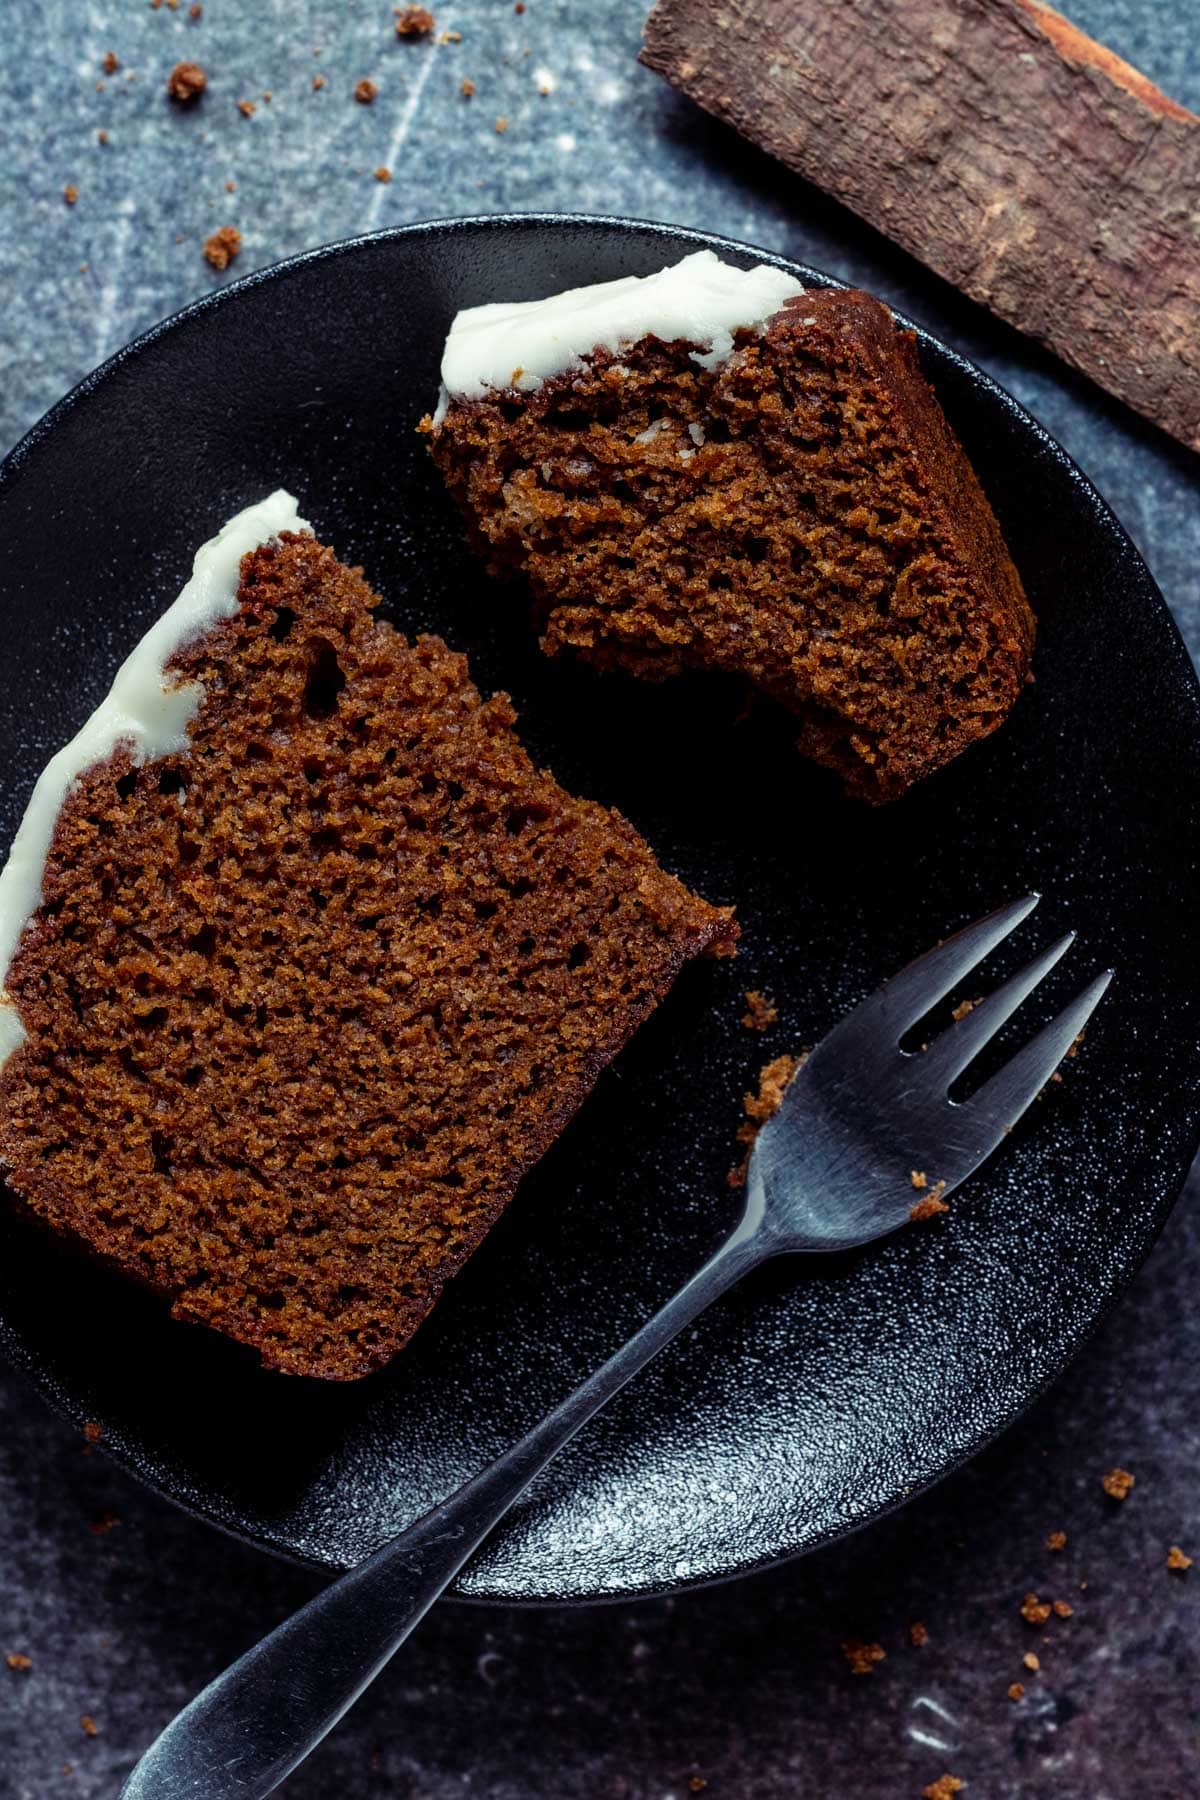 Lebkuchenscheibe auf einem schwarzen Teller mit einer Kuchengabel.